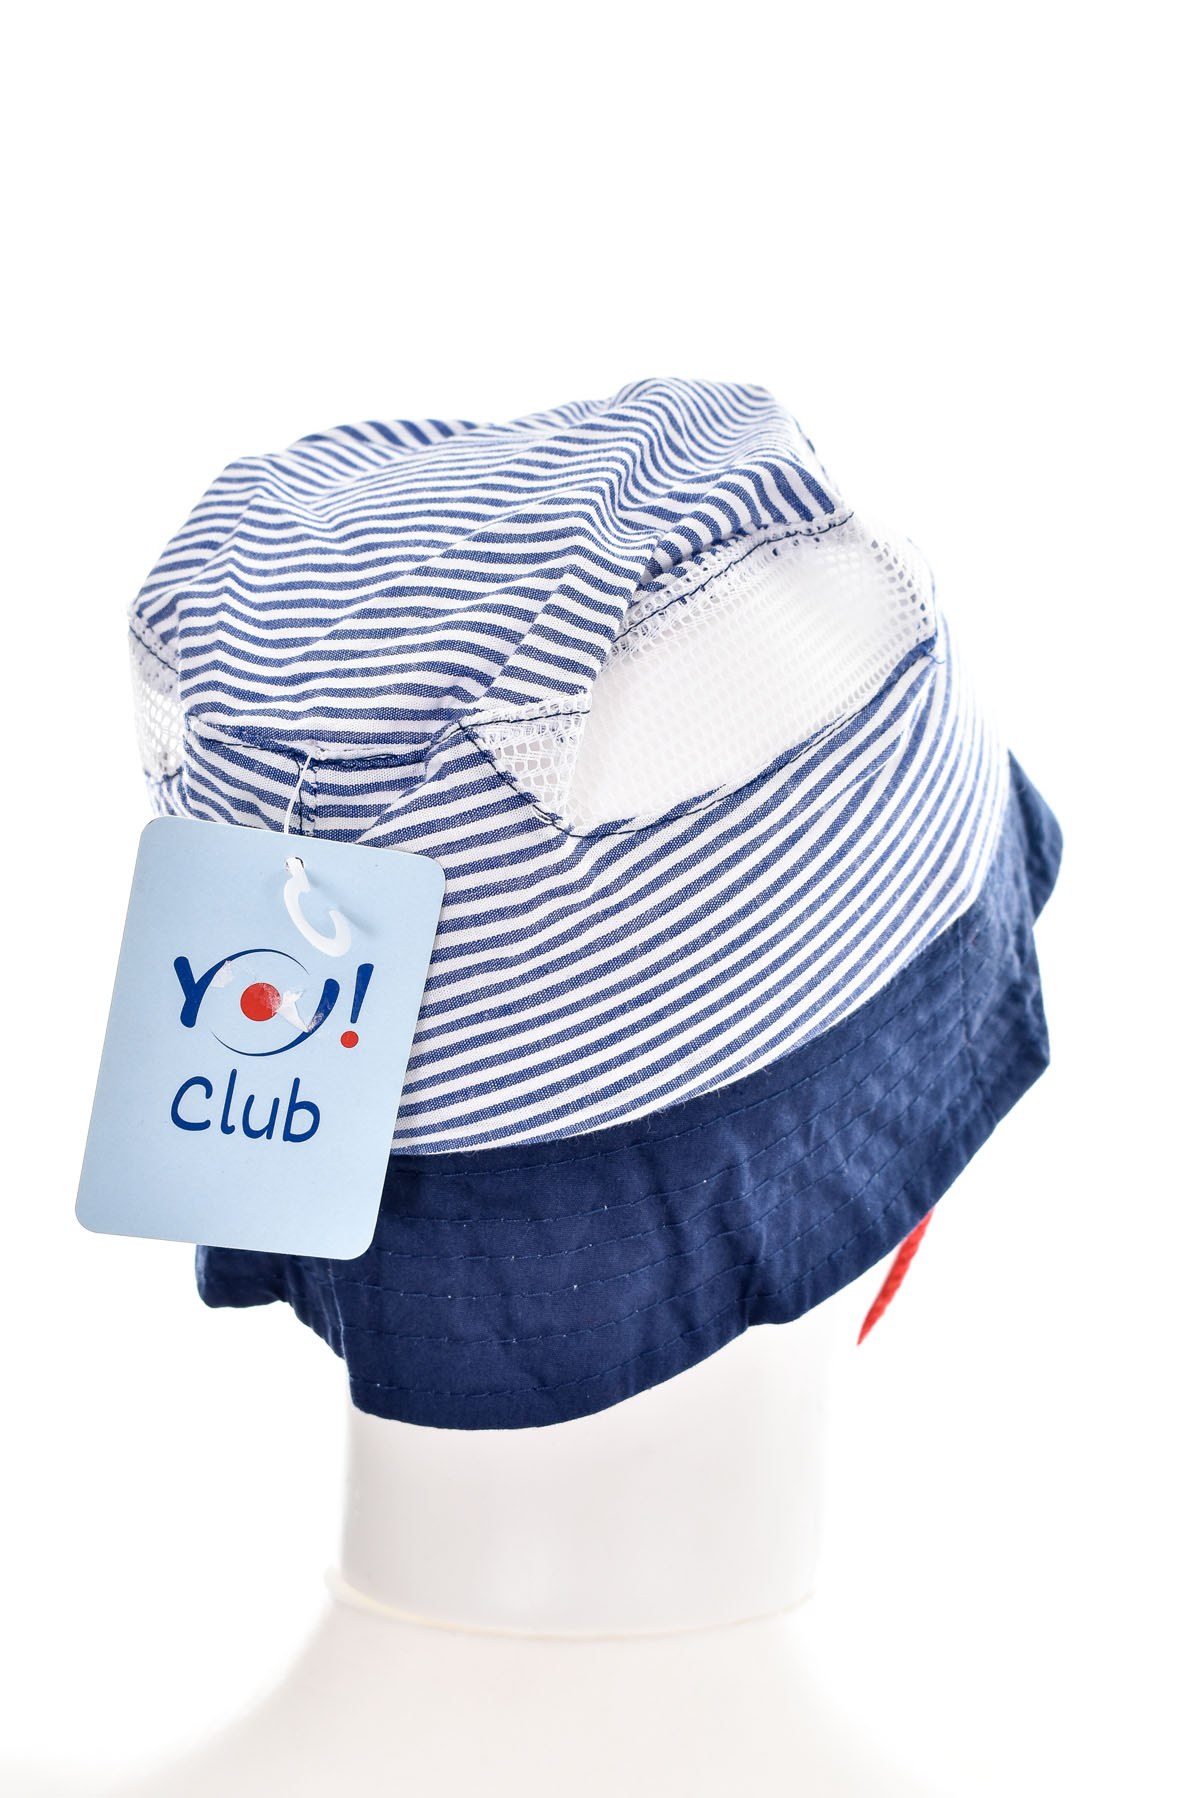 Kids' Hat - YO! club - 1